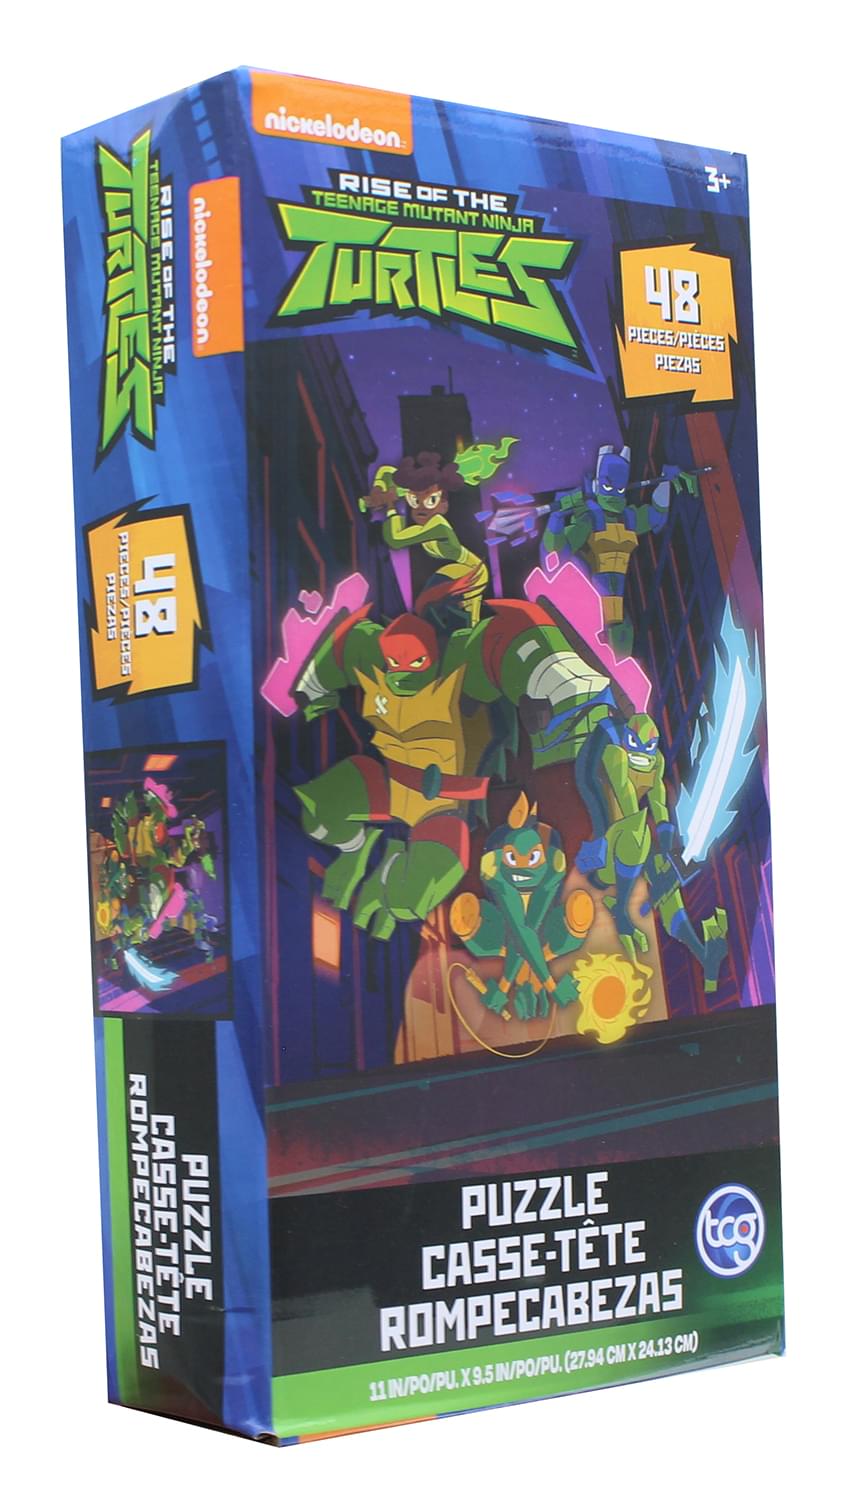 Teenage Mutant Ninja Turtles 48 Piece Jigsaw Puzzle